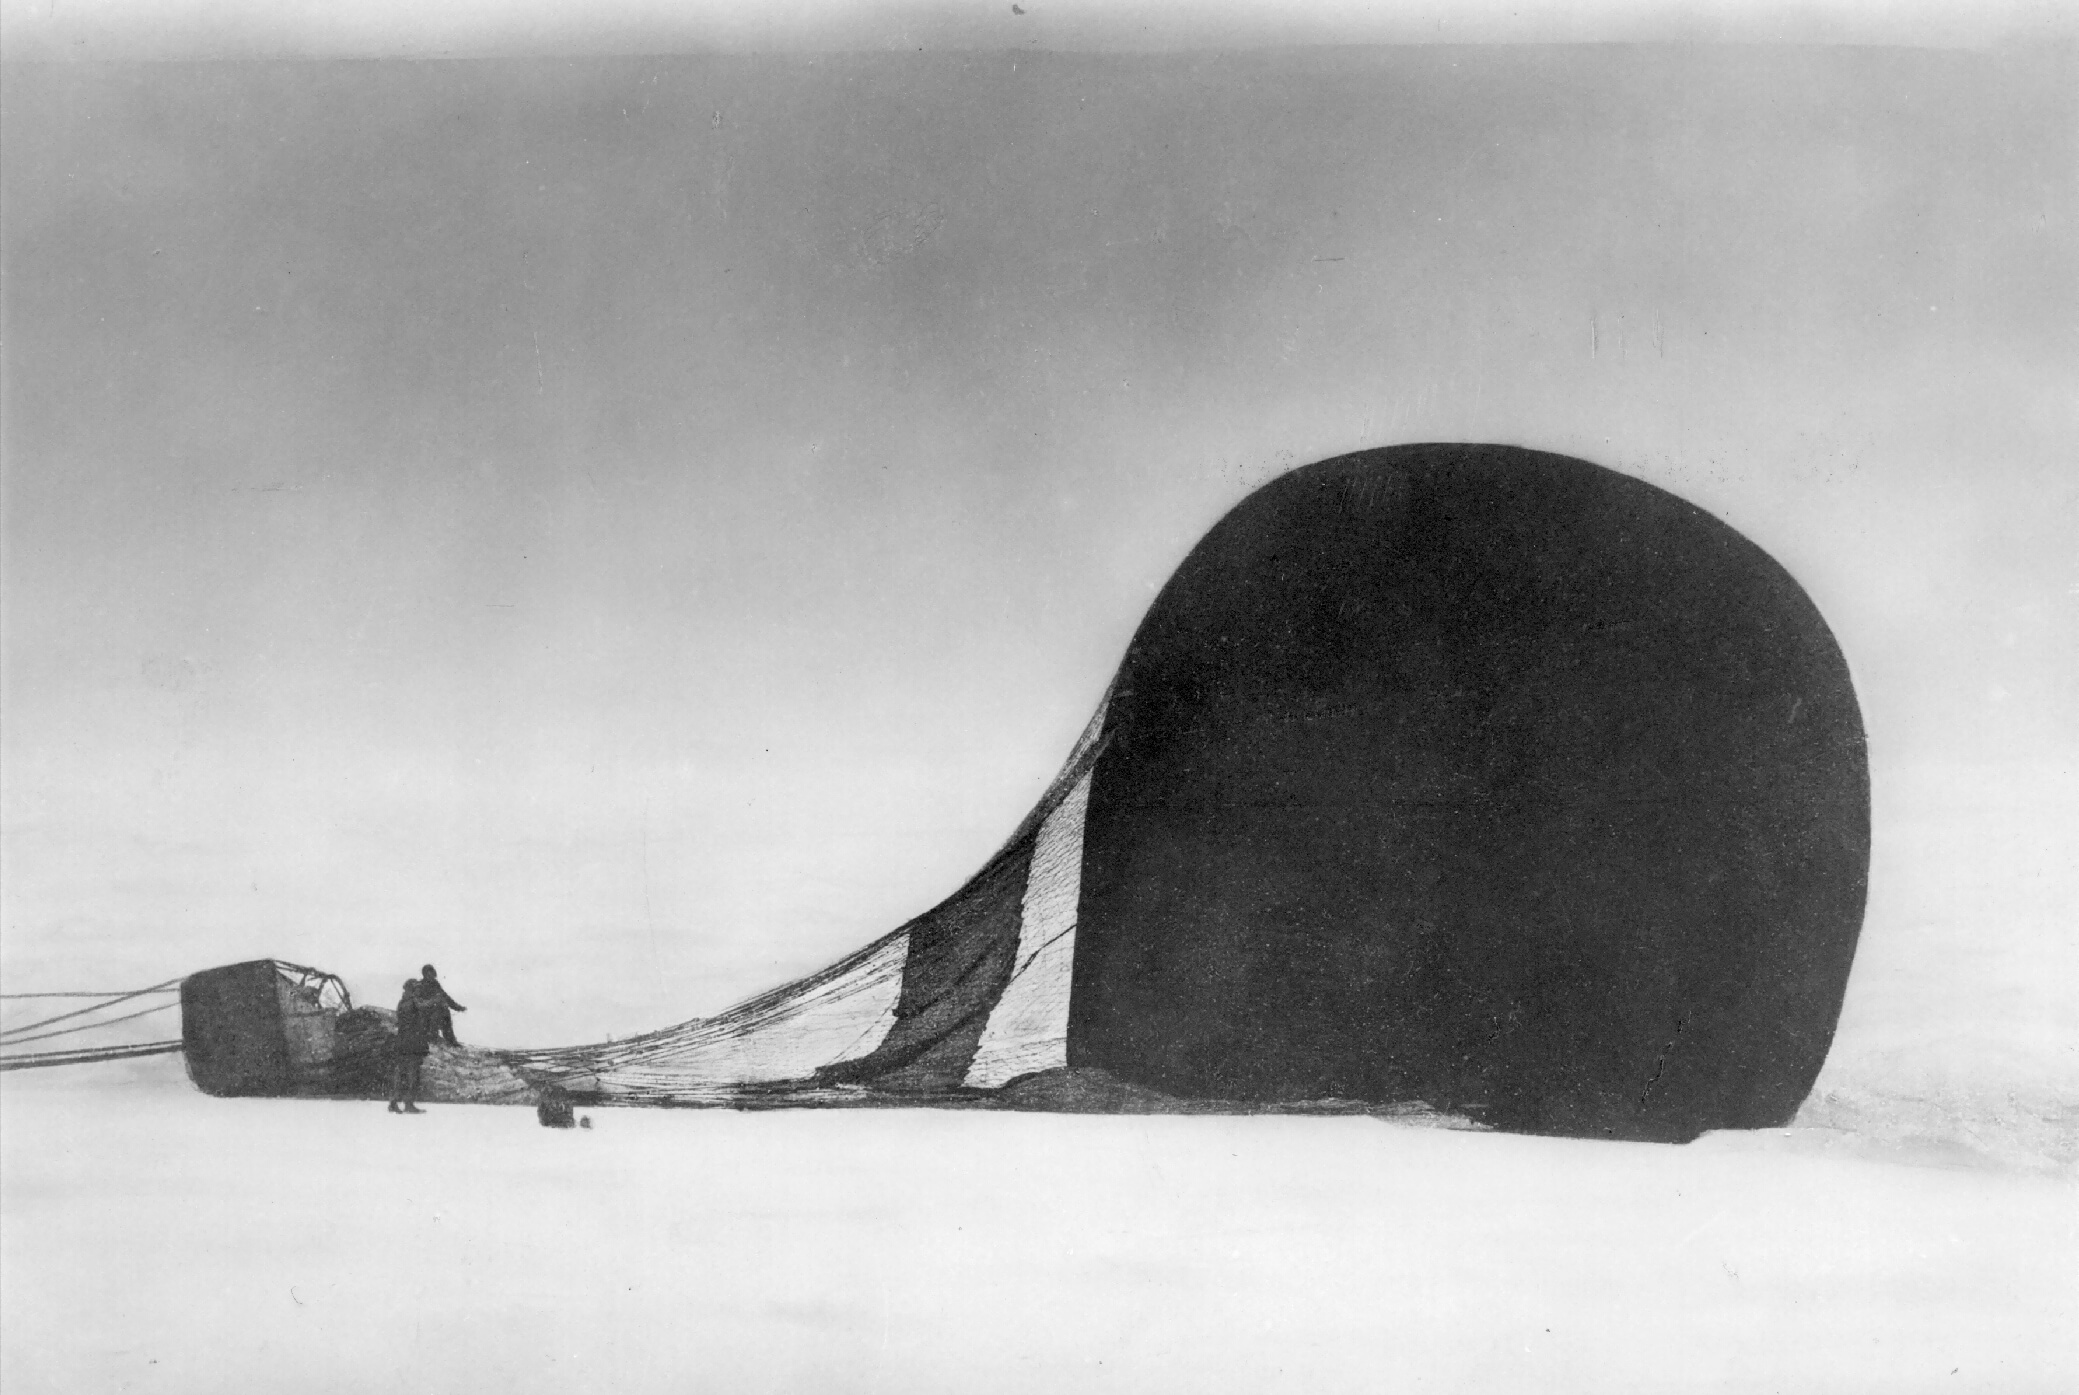 Sort-hvitt bilde med en stor luftballong liggende på sne, to menn står ved siden